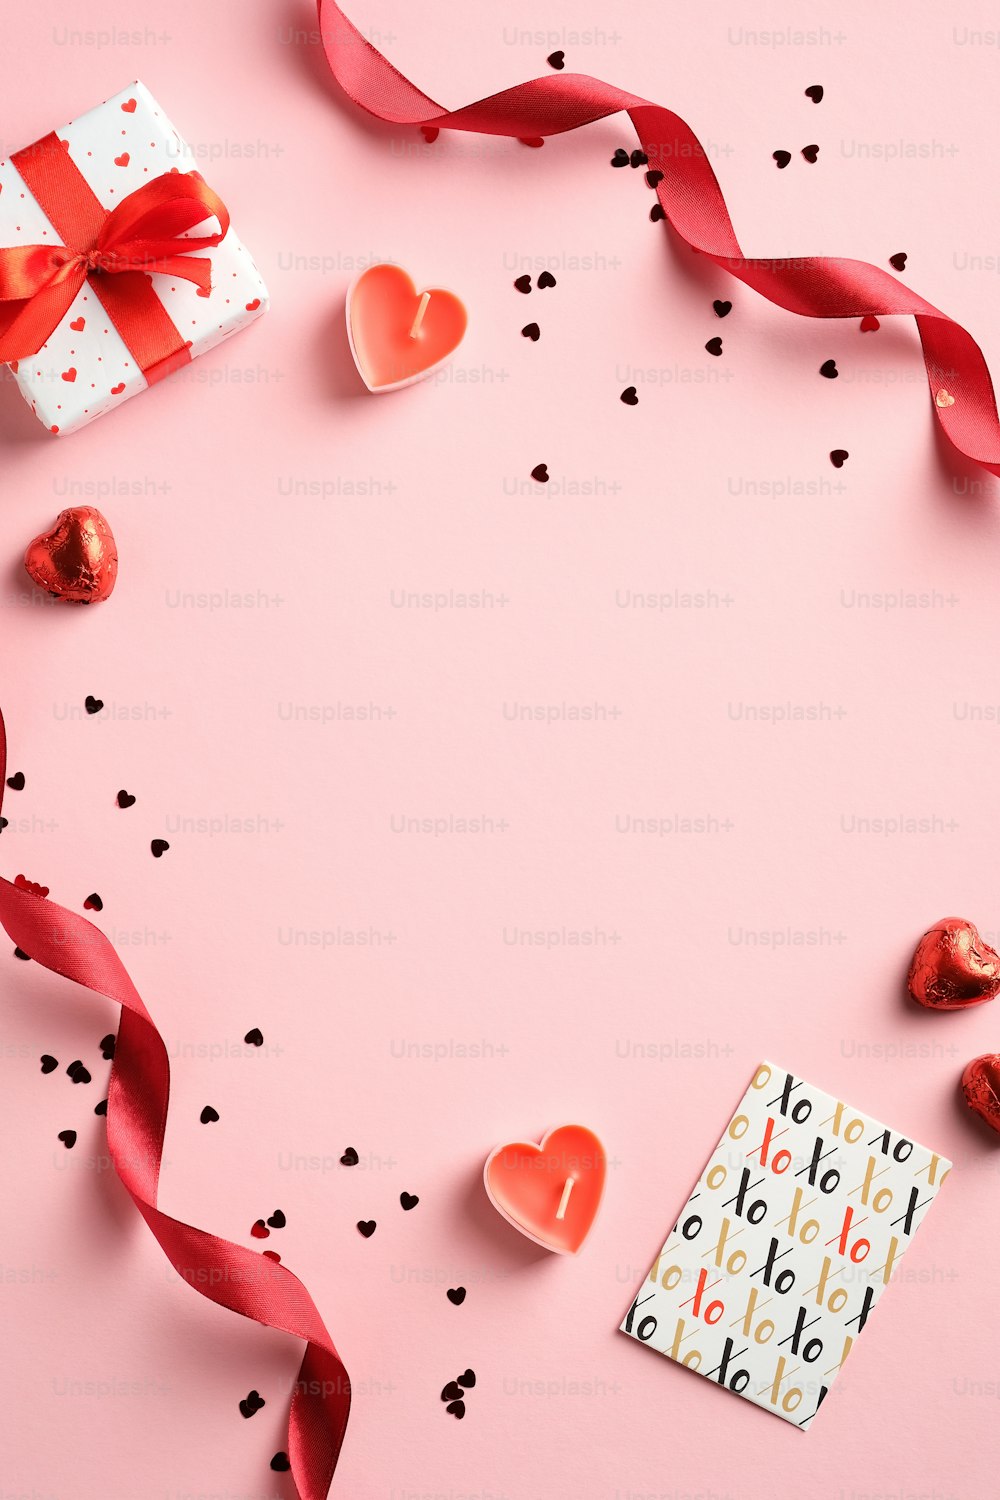 Happy Valentines Day Konzept. Kreatives Layout mit rotem Band, Geschenkbox, Grußkarte, Konfetti auf rosa Hintergrund. Draufsicht, flach gelegt.